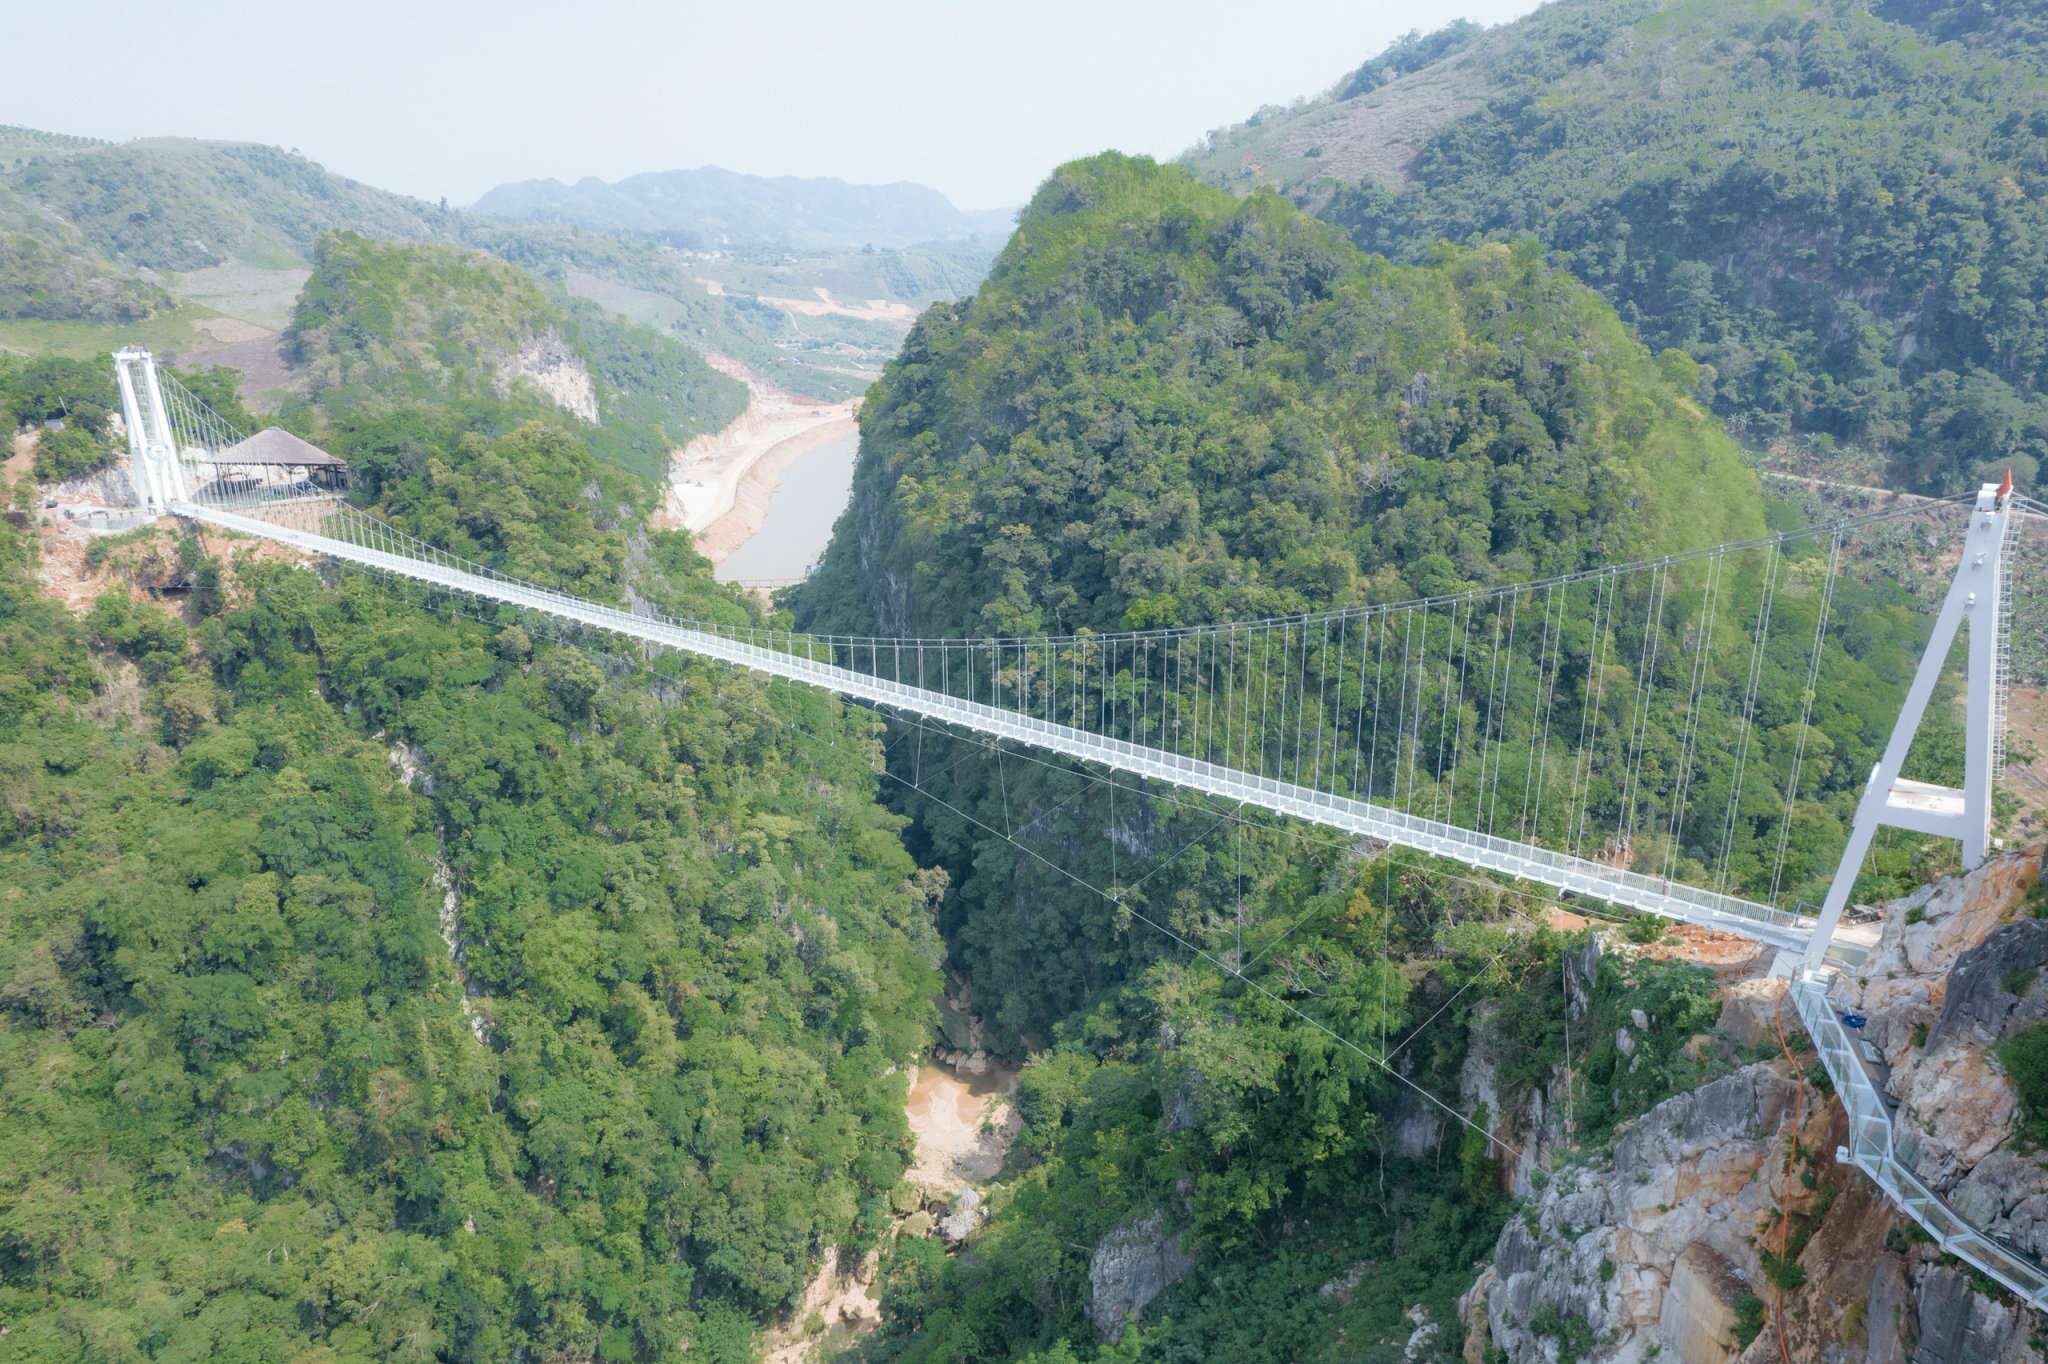 Hängebrücken Bach-Long-Glasbrücke in Vietnam